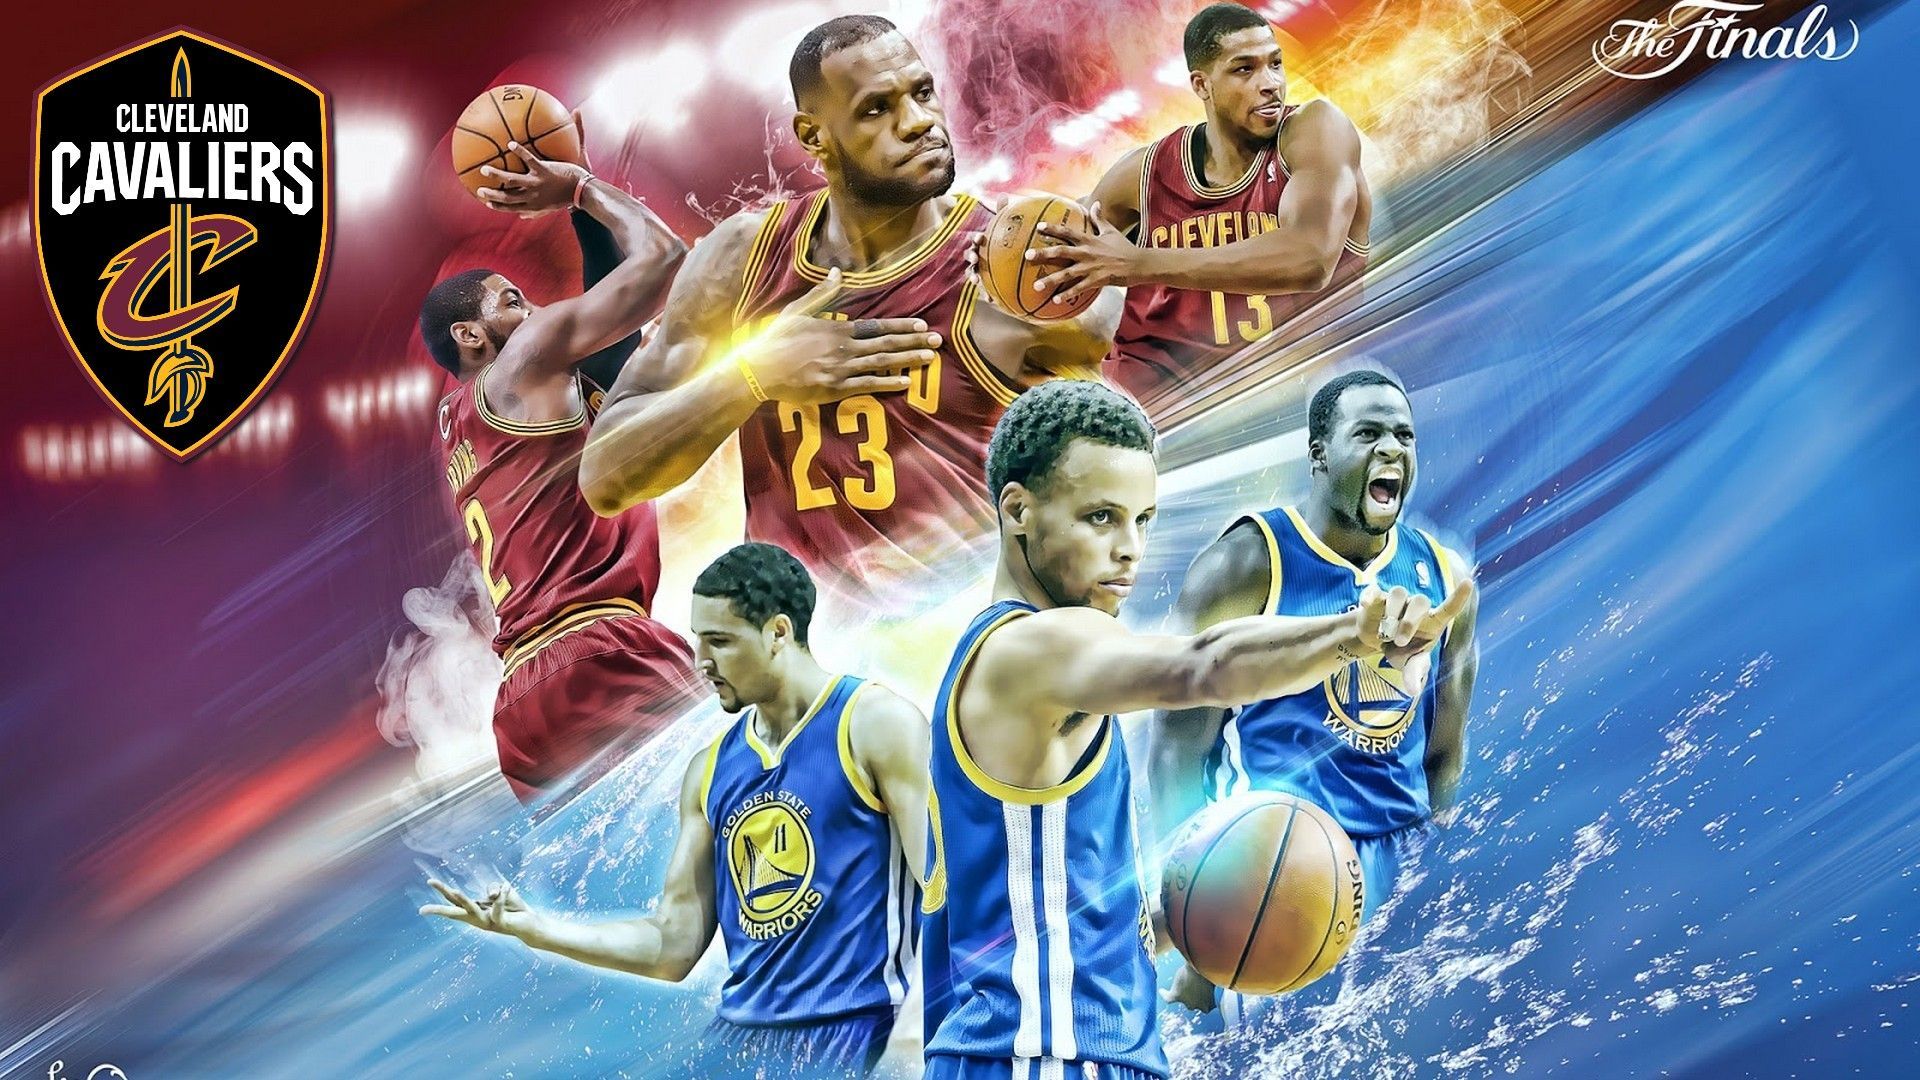 Big 3 Cleveland Cavaliers Wallpaper. Nba wallpaper, Lebron james